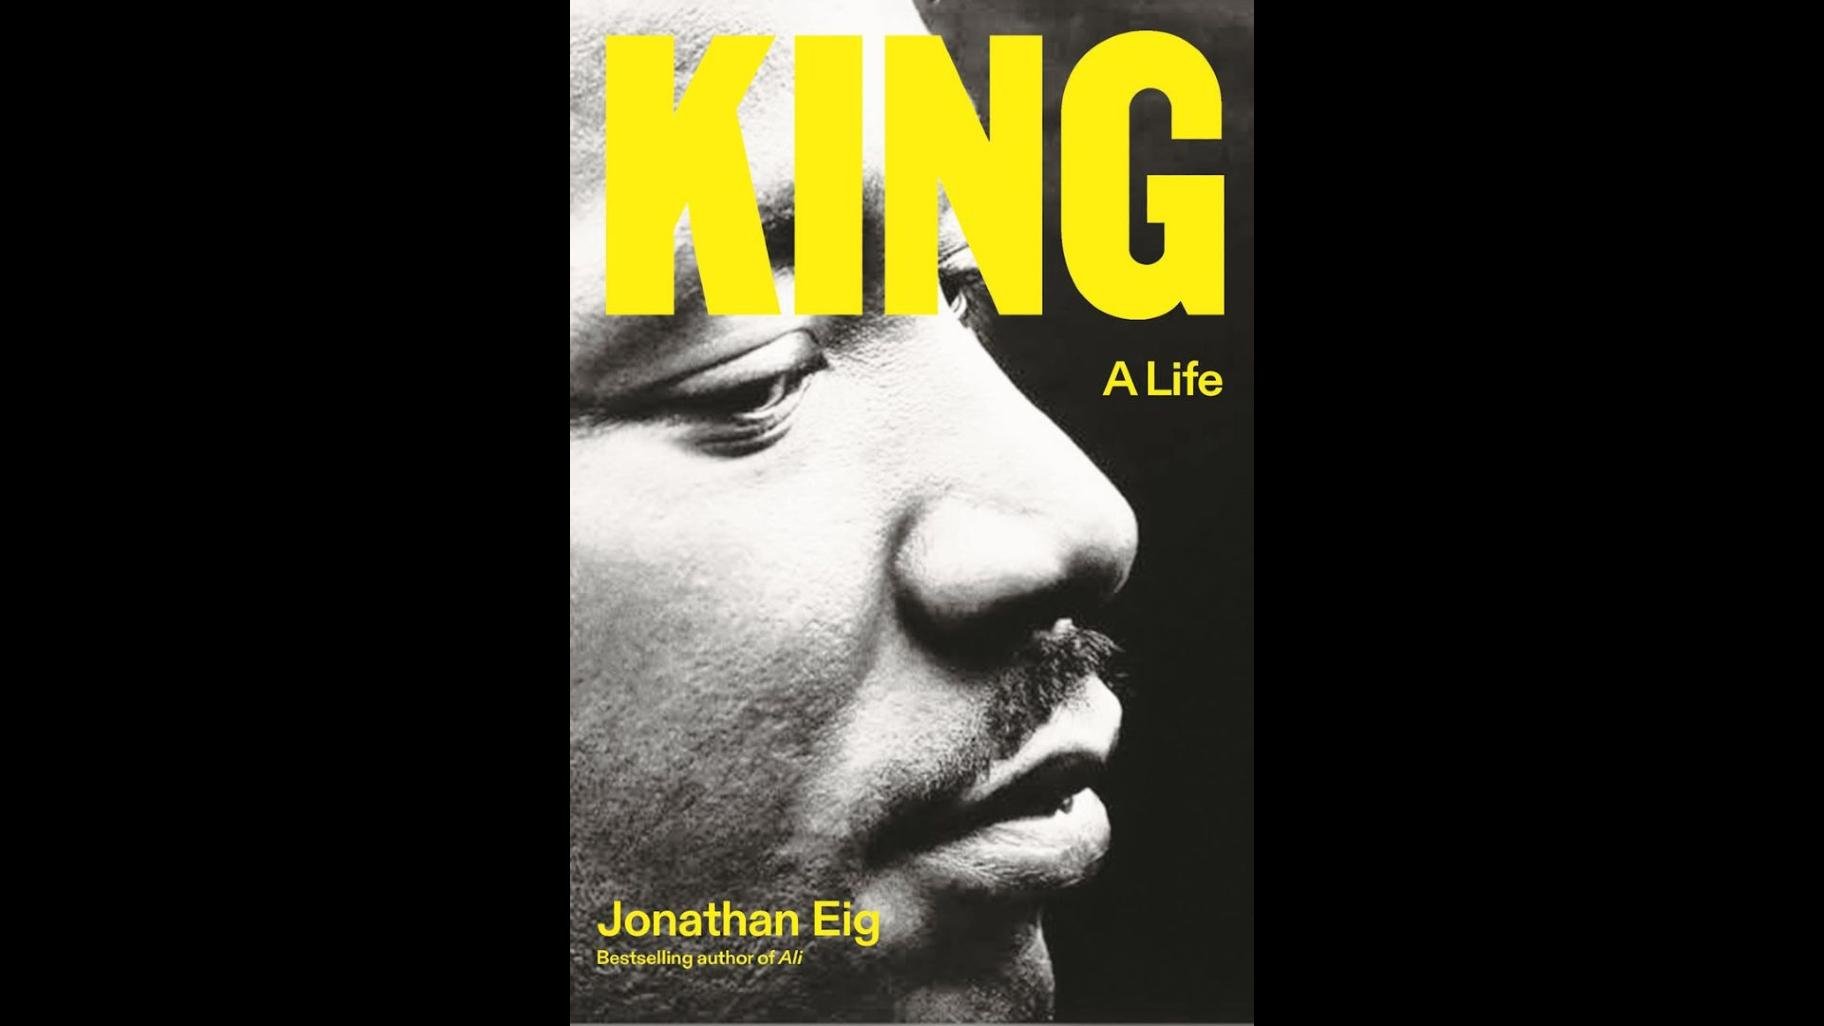 “King: A Life” by Jonathan Eig. 